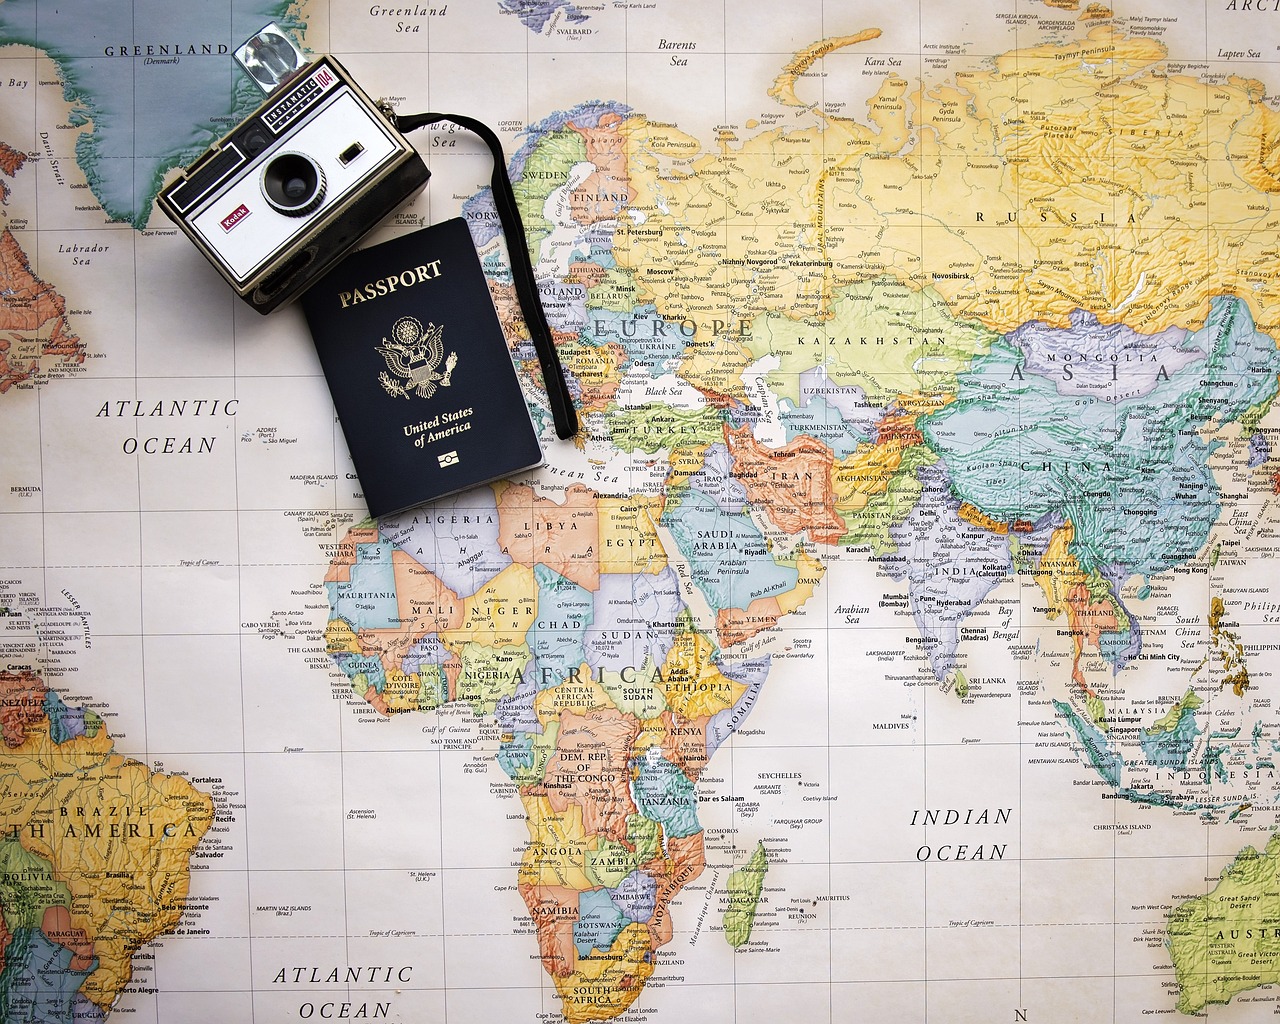 Quanto tempo demora a emissão de um passaporte?